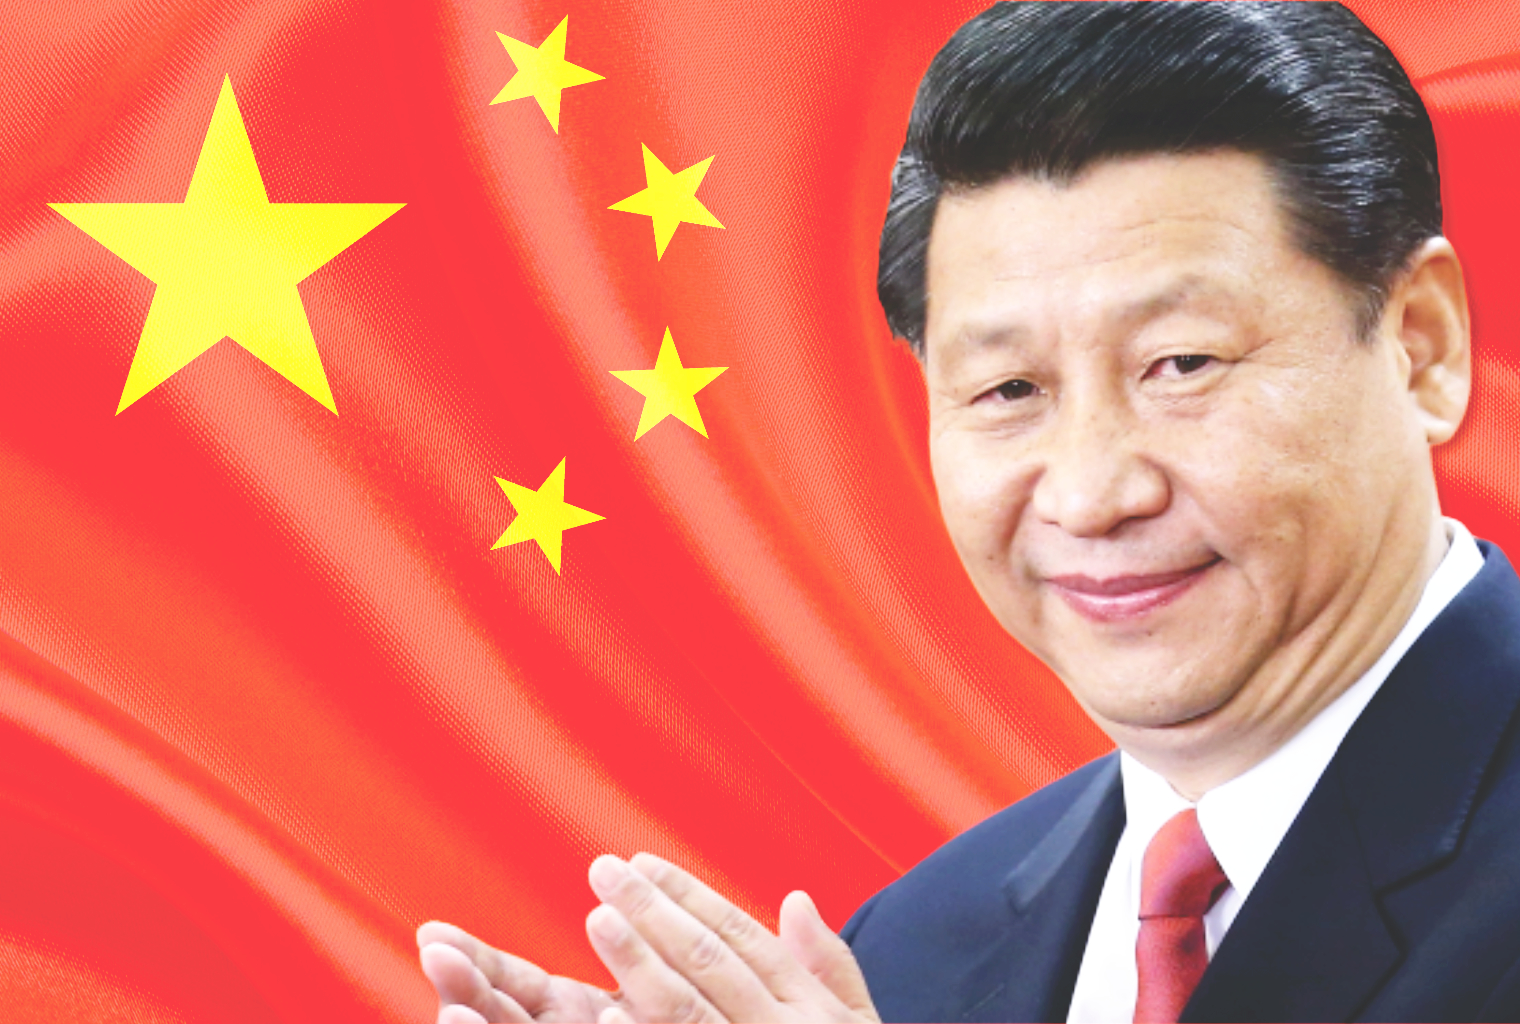  China clasifica 35 proyectos criptográficos mientras el presidente Xi empuja Blockchain 